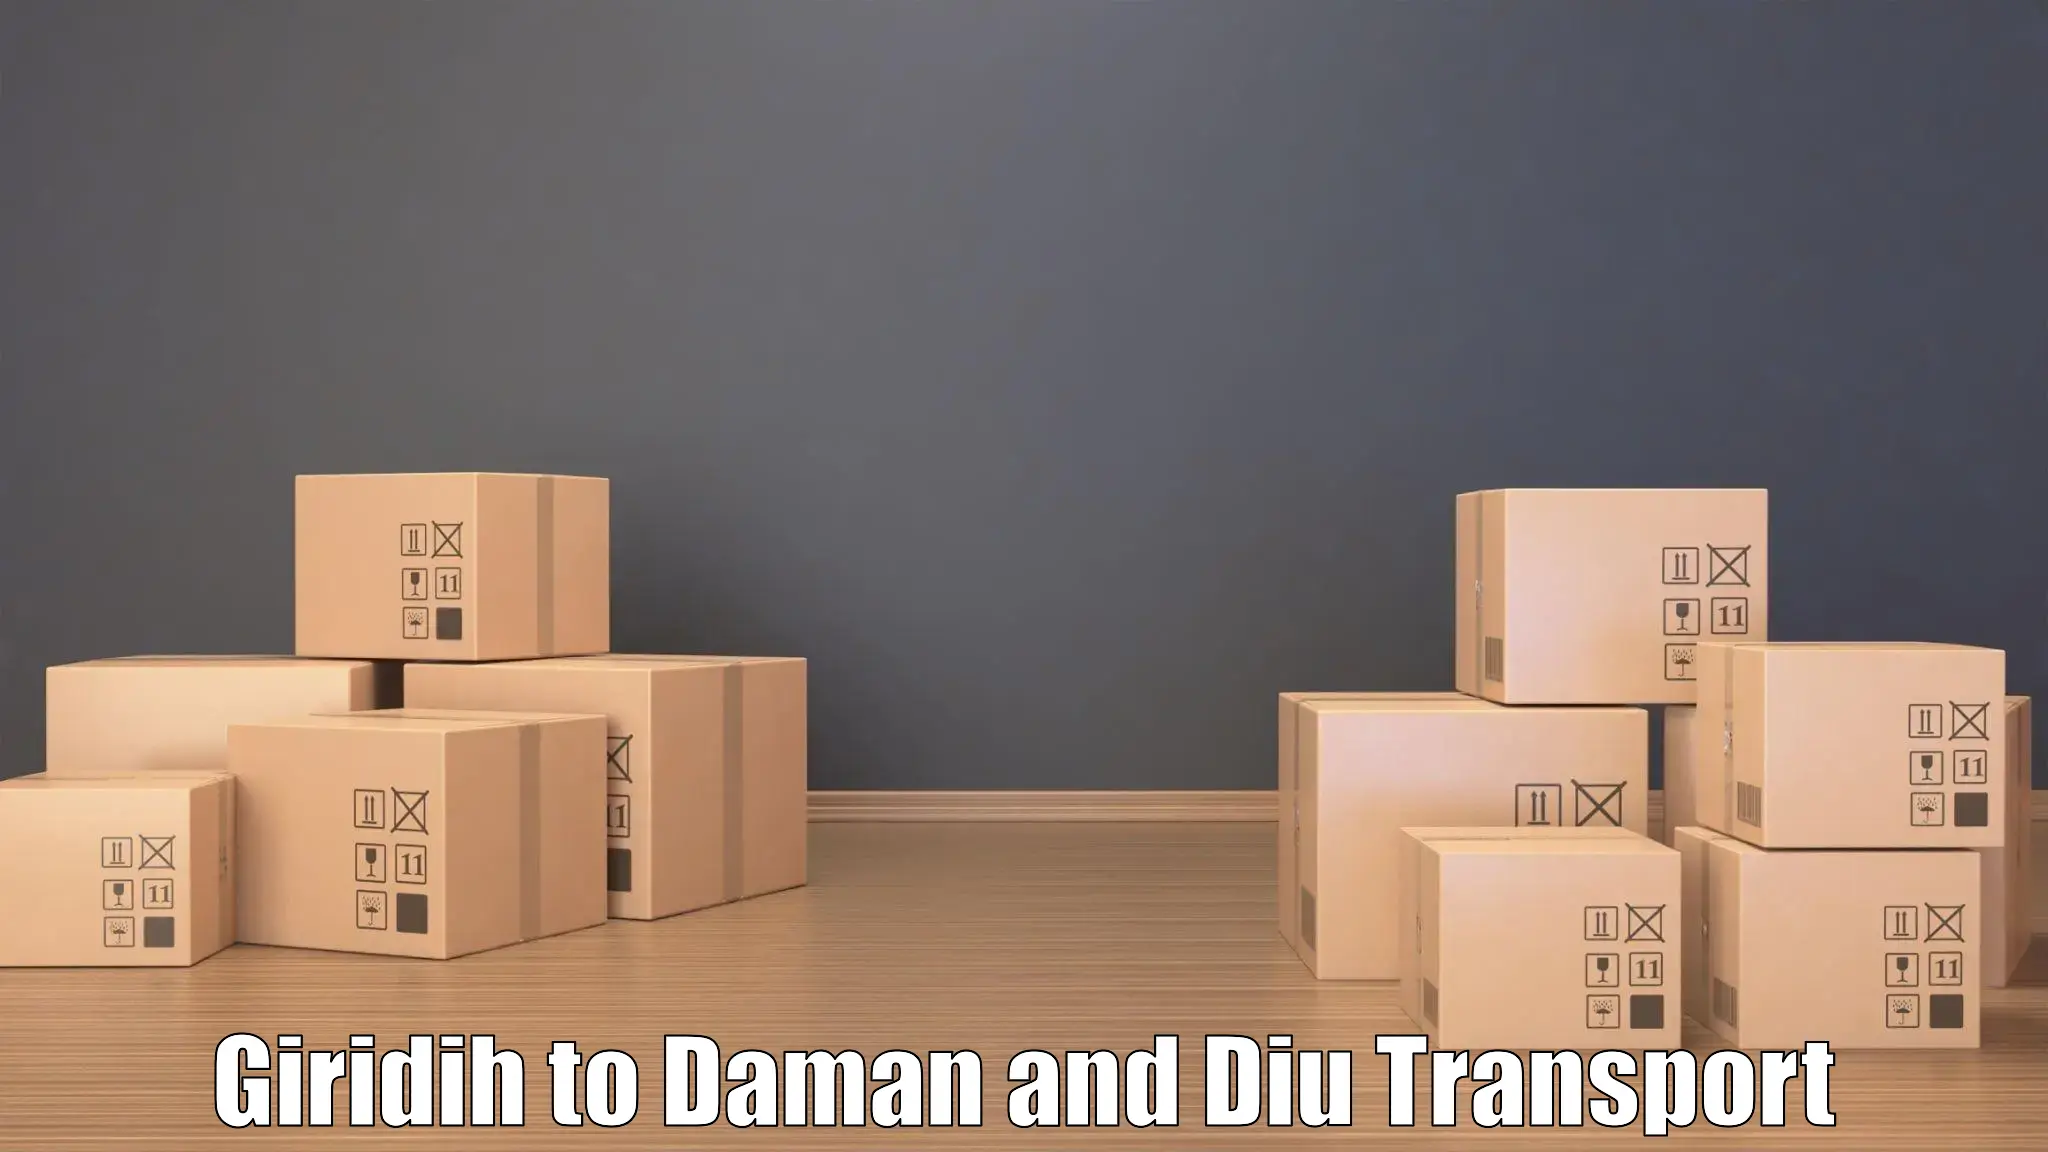 Daily transport service Giridih to Daman and Diu